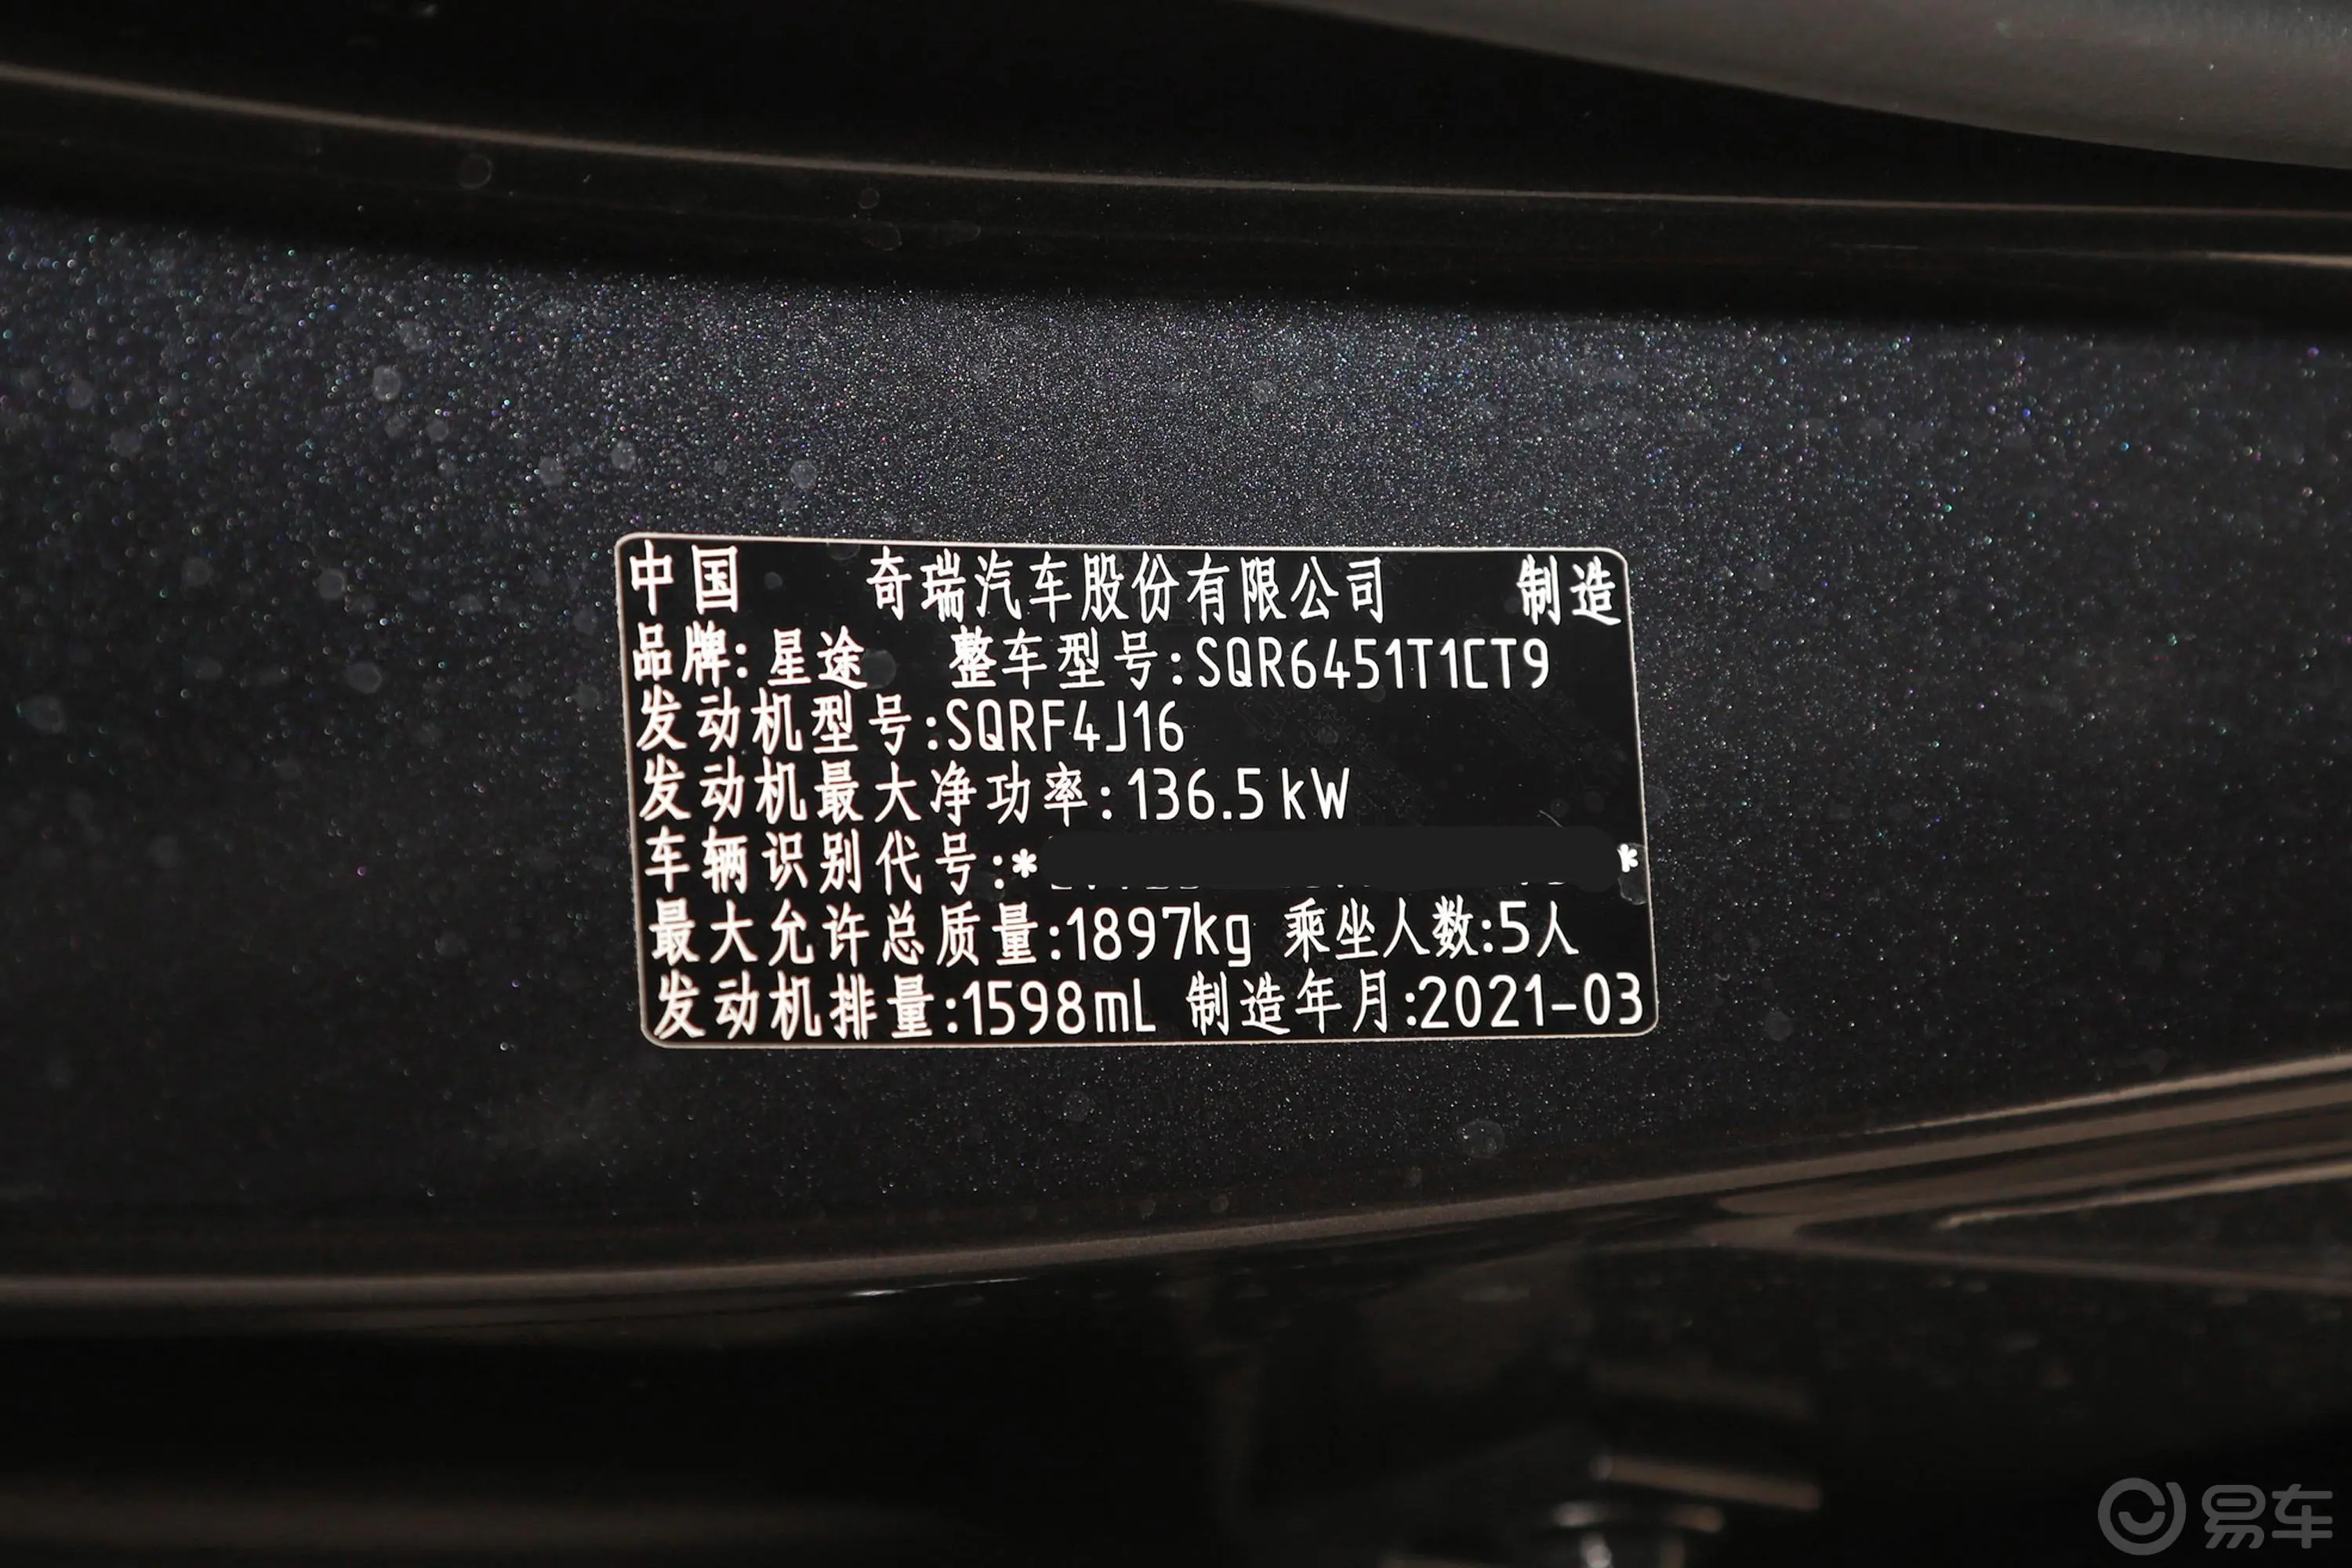 星途追风凡尔赛版 1.6T 双离合 星睿版车辆信息铭牌